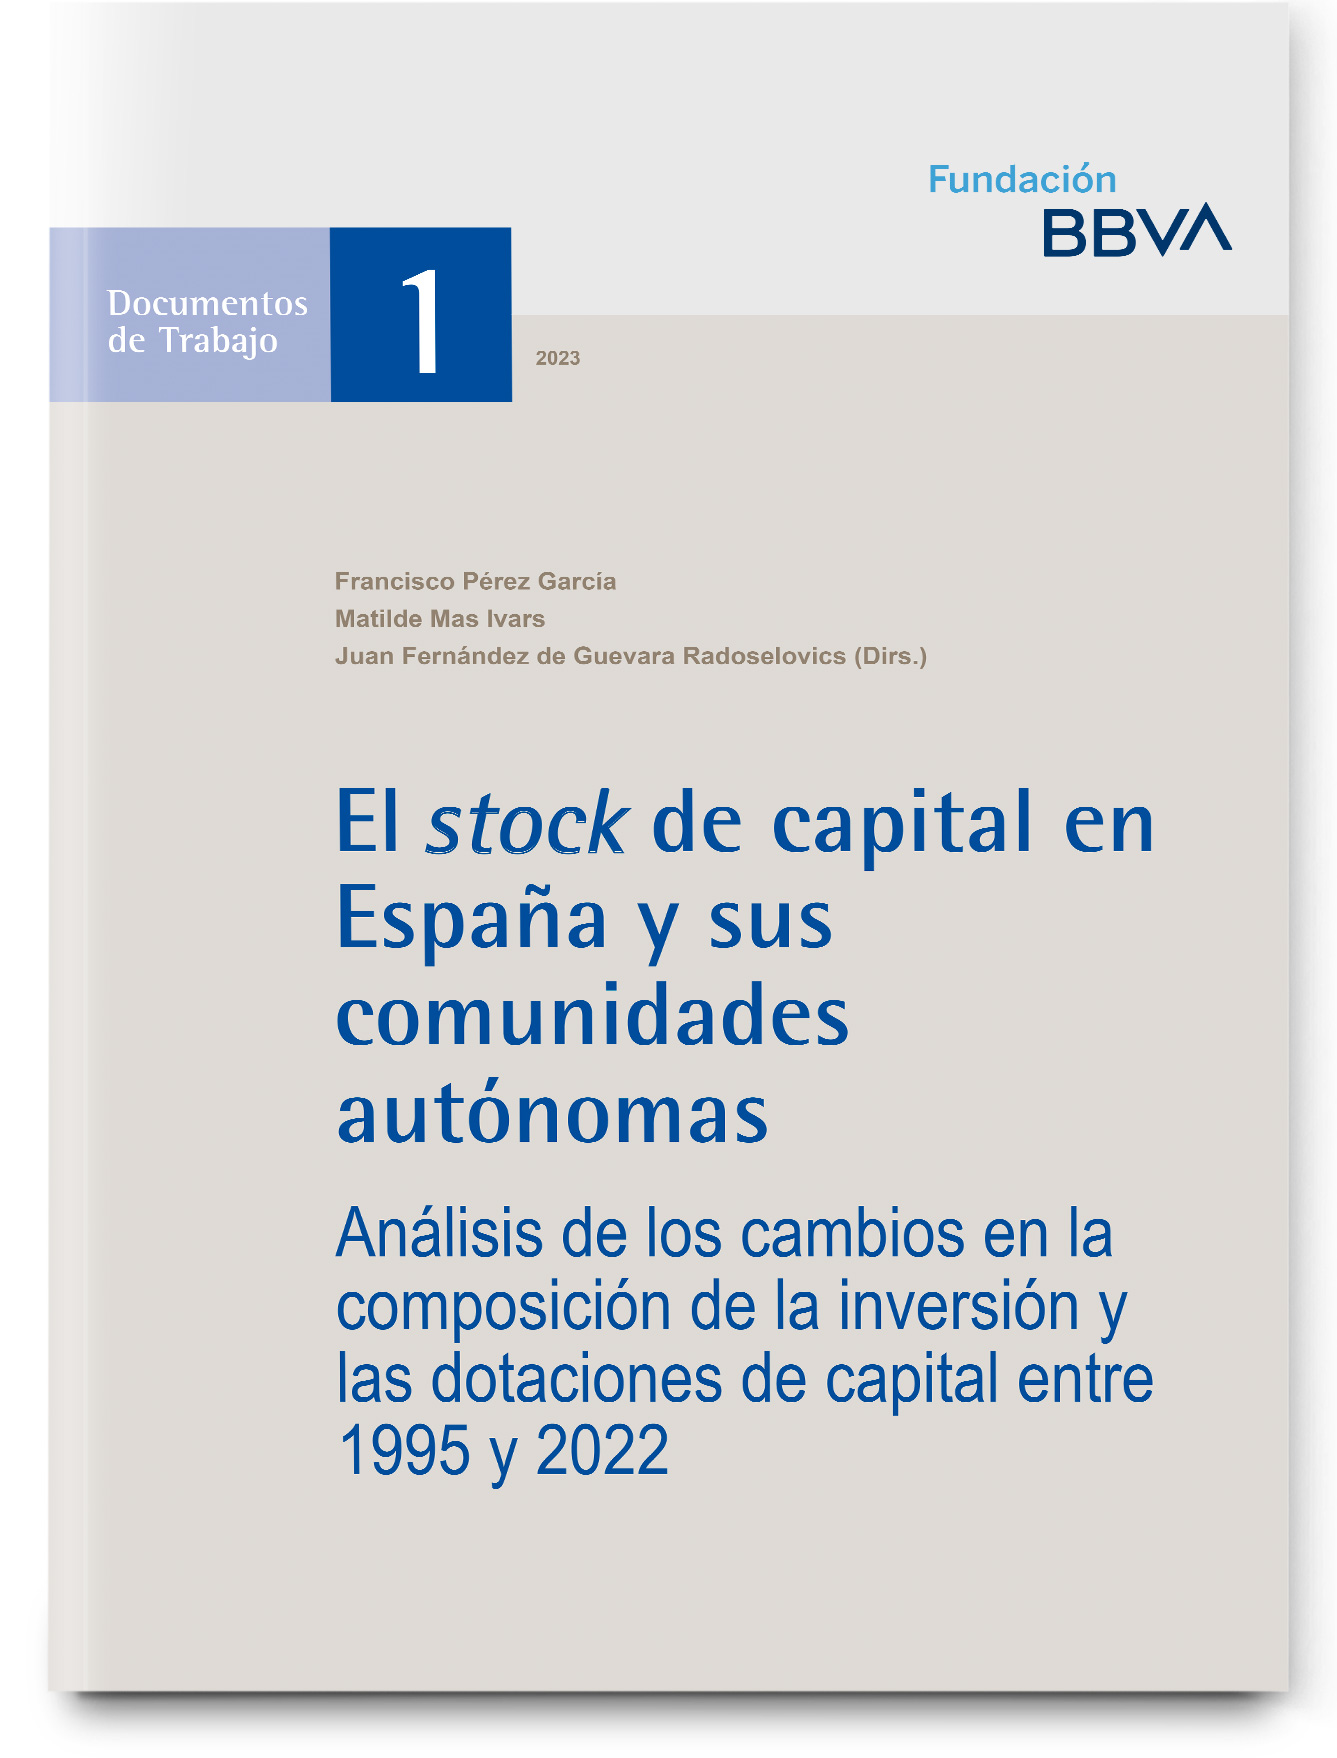 El stock de capital en España y sus comunidades autónomas (1964-2022)